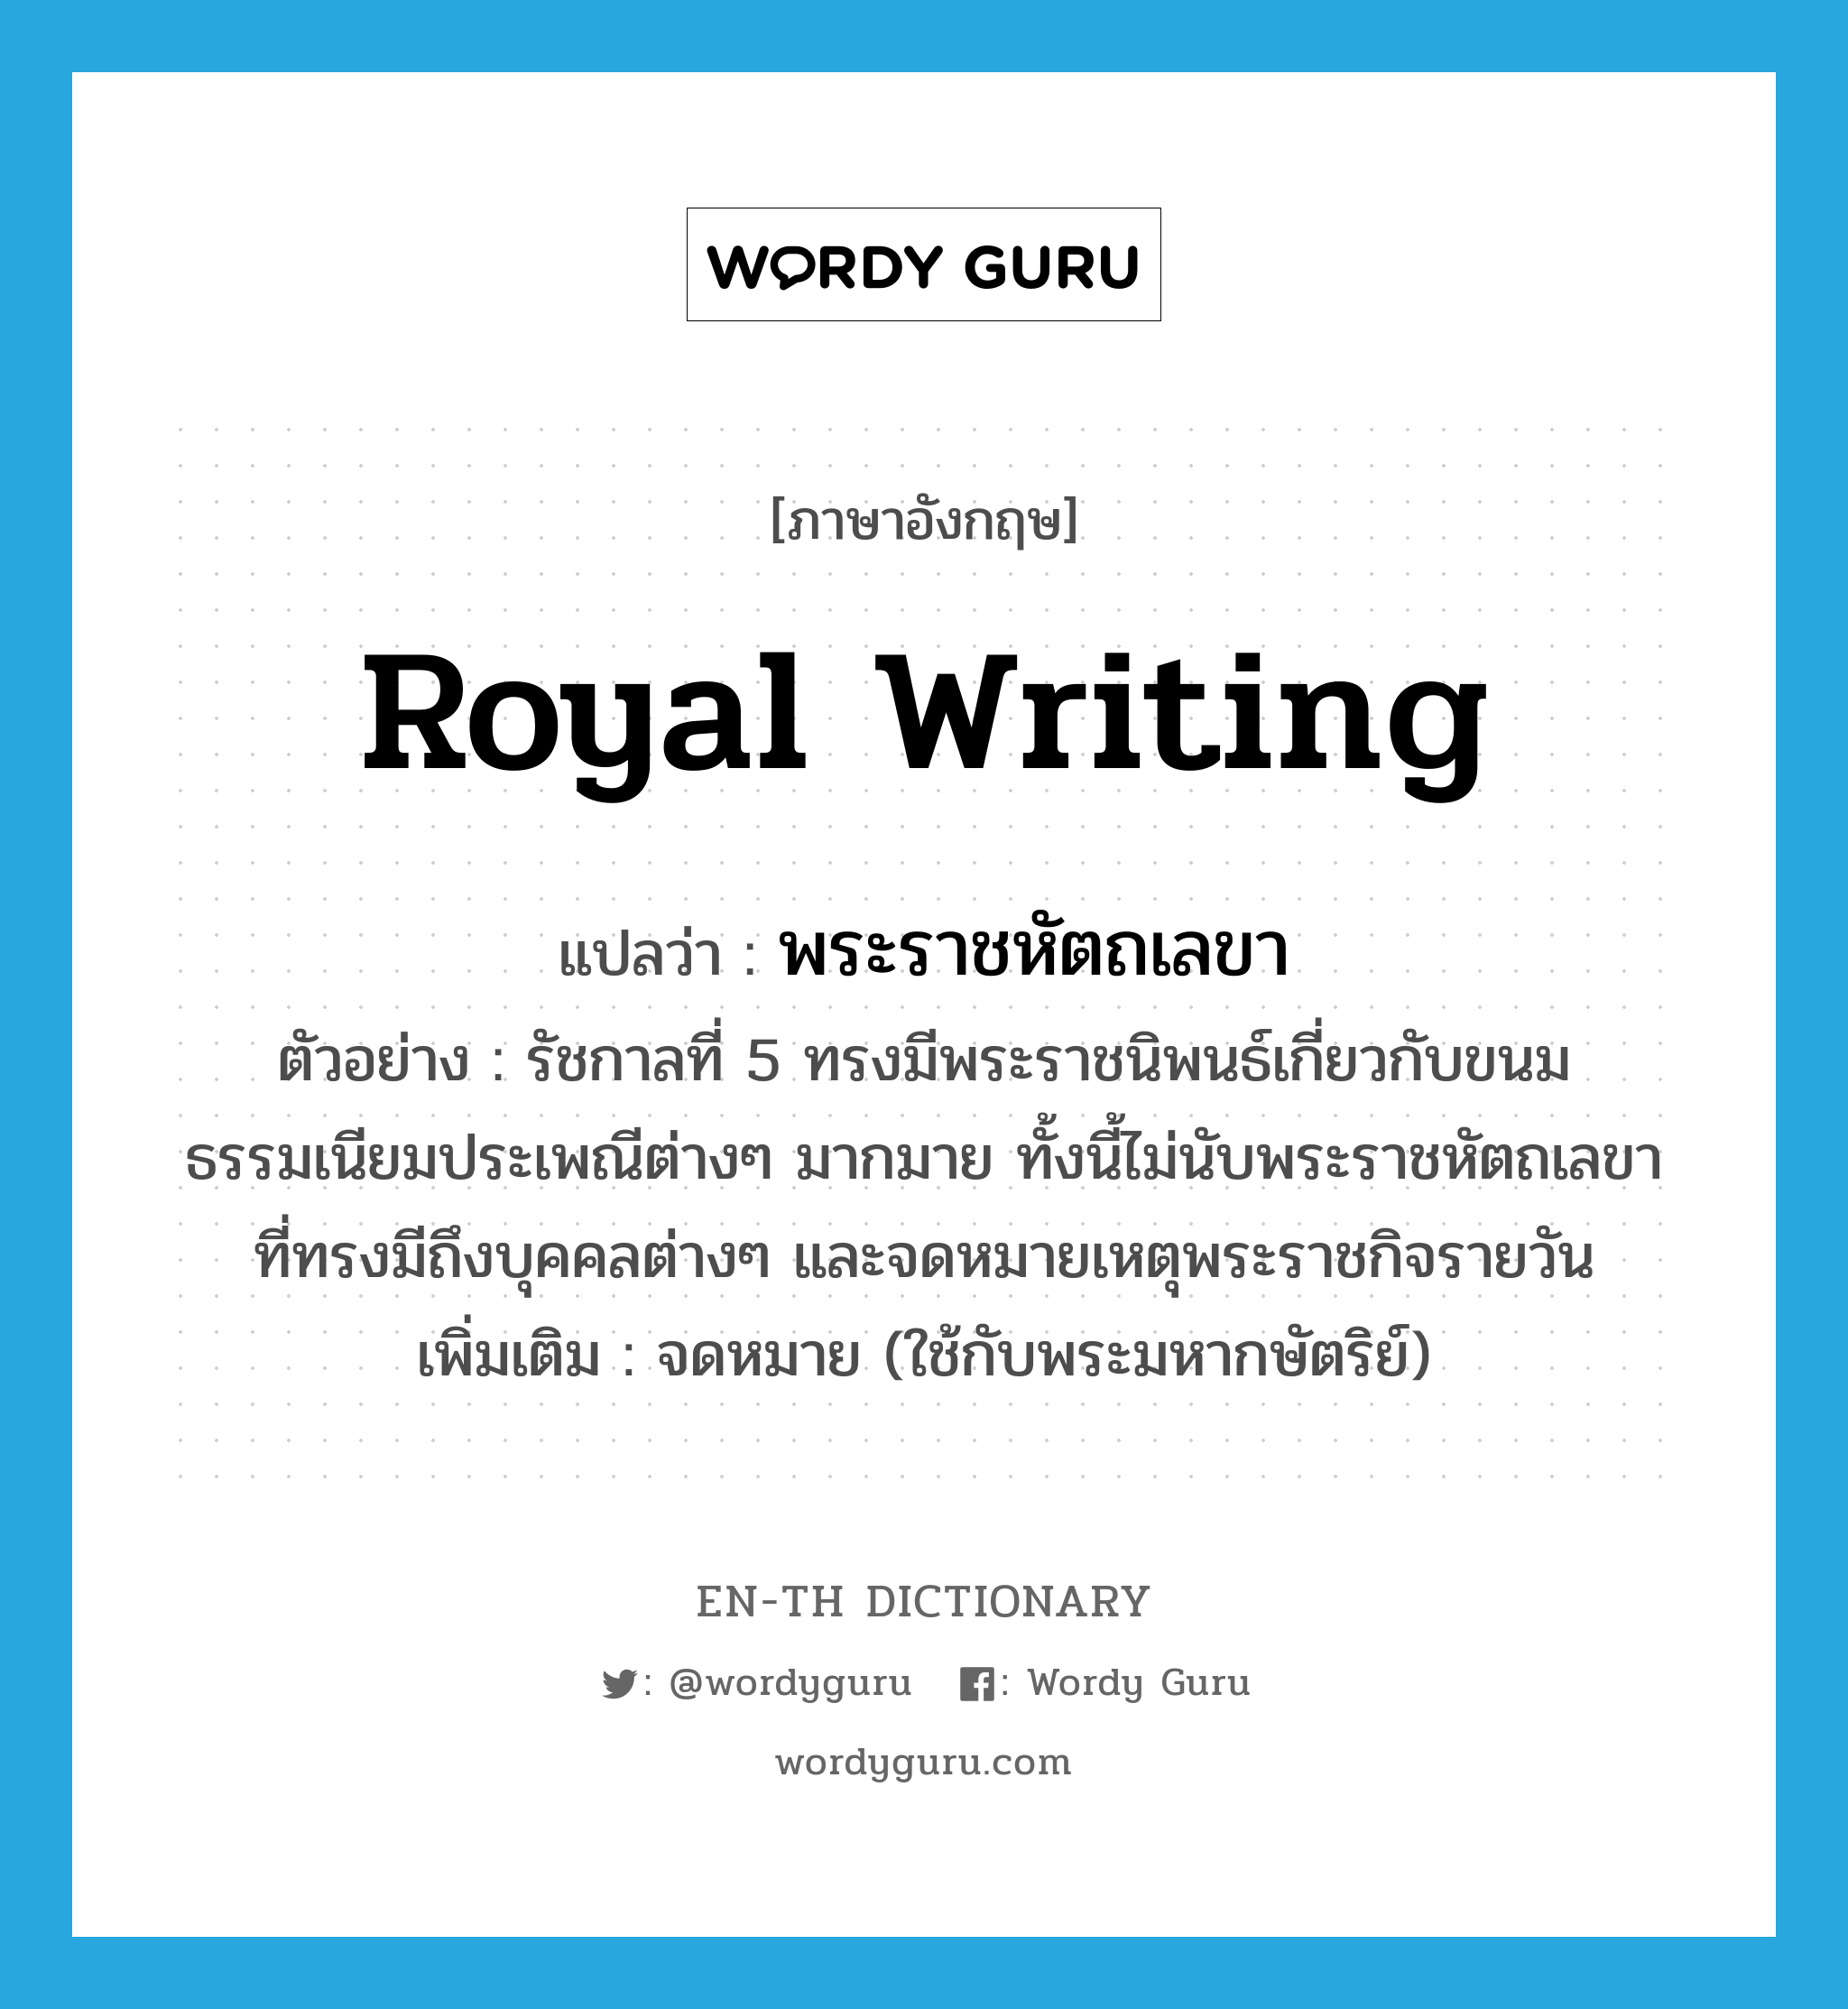 royal writing แปลว่า?, คำศัพท์ภาษาอังกฤษ royal writing แปลว่า พระราชหัตถเลขา ประเภท N ตัวอย่าง รัชกาลที่ 5 ทรงมีพระราชนิพนธ์เกี่ยวกับขนมธรรมเนียมประเพณีต่างๆ มากมาย ทั้งนี้ไม่นับพระราชหัตถเลขา ที่ทรงมีถึงบุคคลต่างๆ และจดหมายเหตุพระราชกิจรายวัน เพิ่มเติม จดหมาย (ใช้กับพระมหากษัตริย์) หมวด N